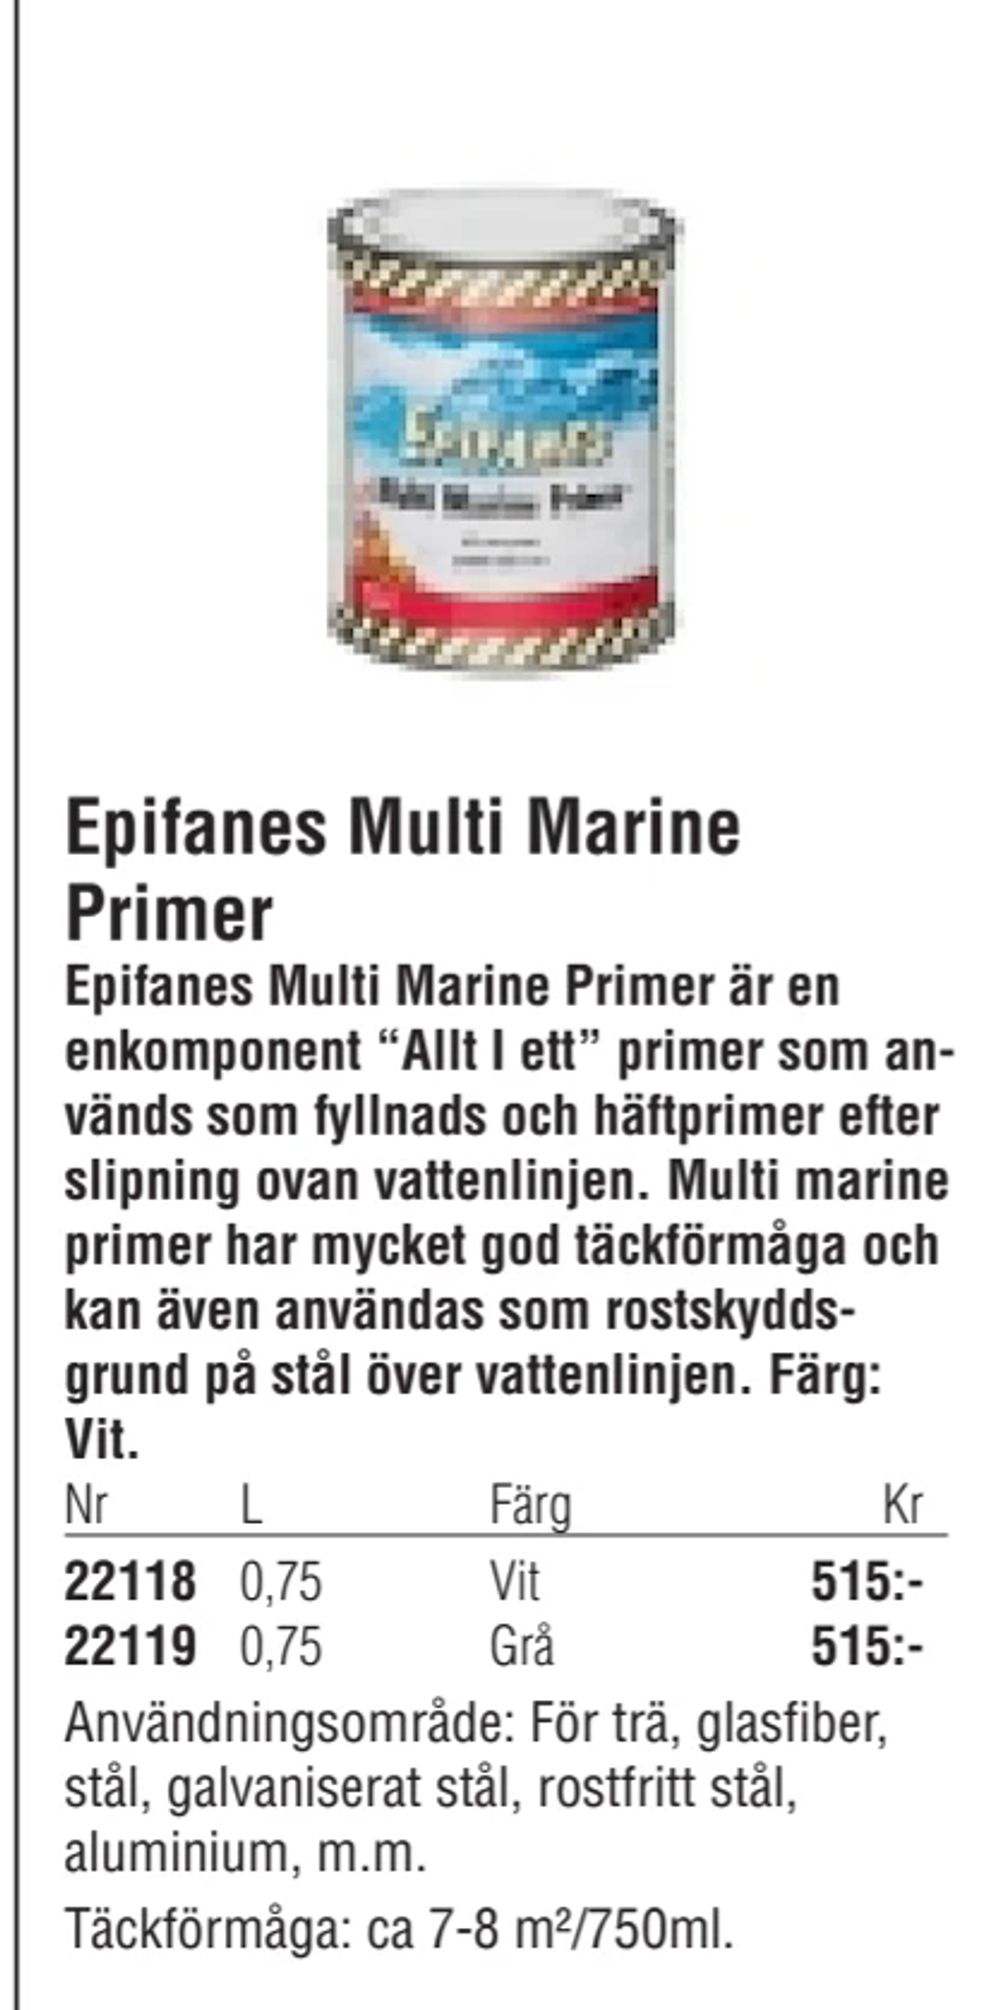 Erbjudanden på Epifanes Multi Marine Primer från Erlandsons Brygga för 515 kr